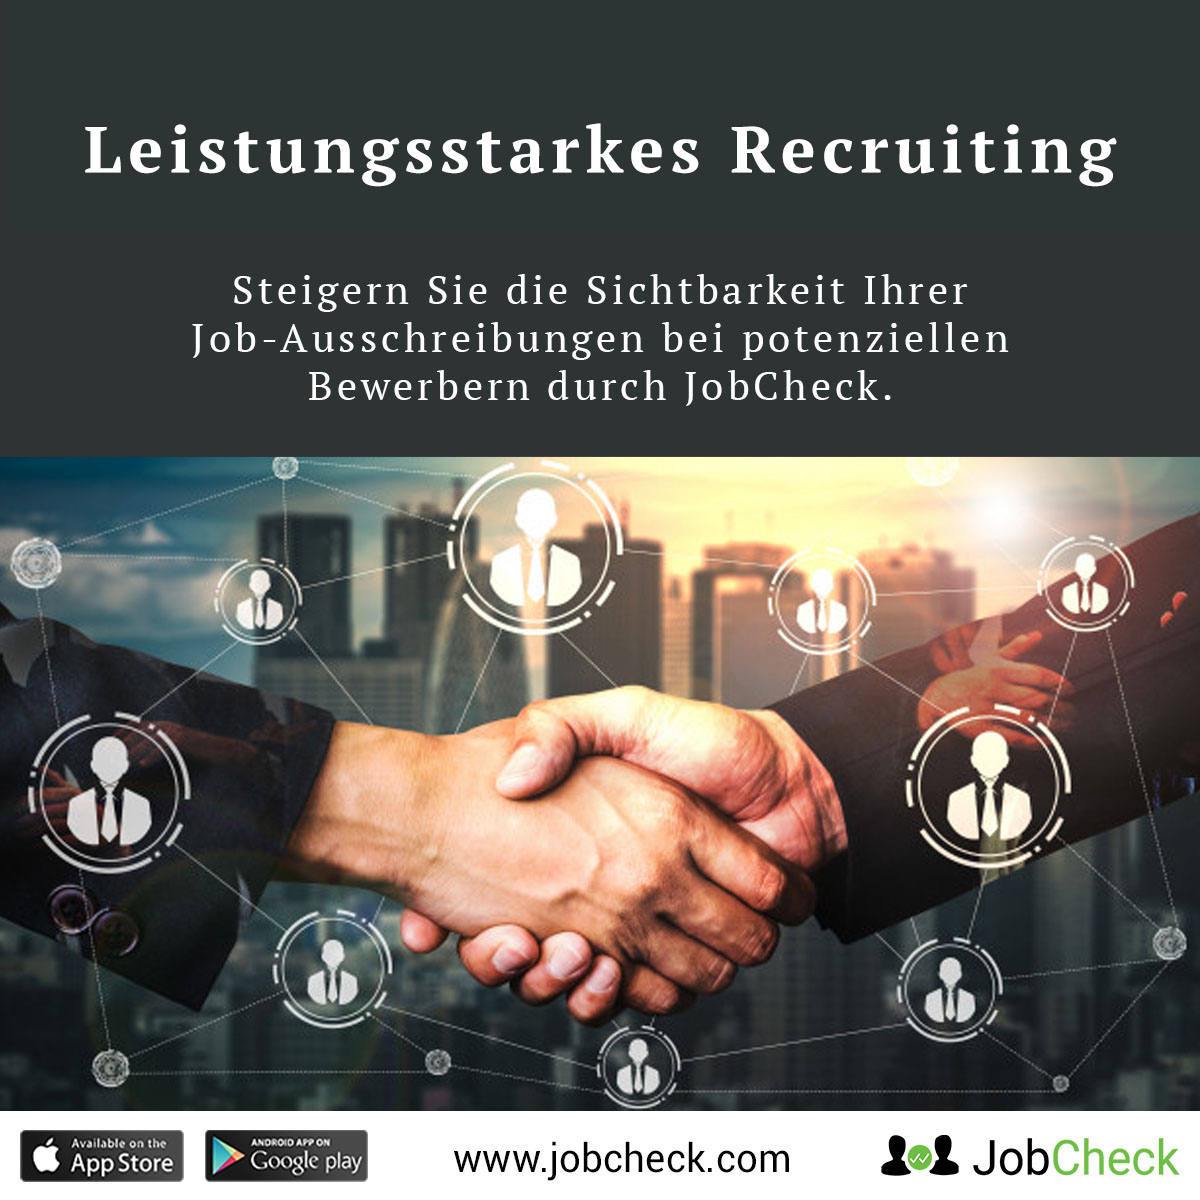 jobcheck-recruiting-leistungsstarkes-recruiting